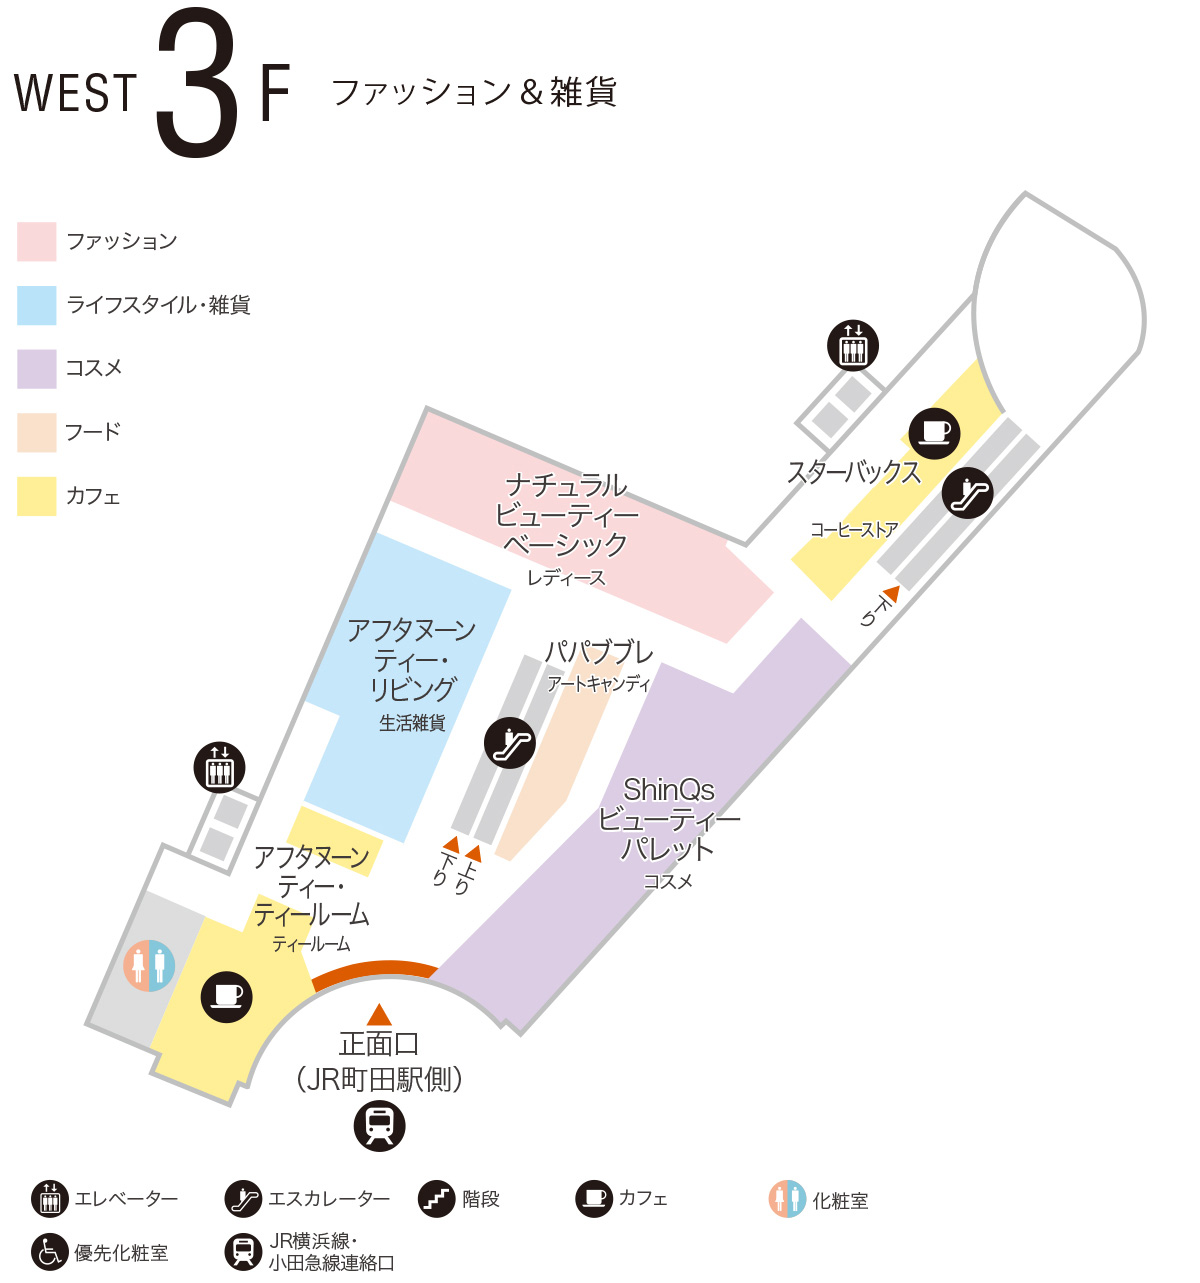 ウエスト 3f ショップ フロアガイド 町田東急ツインズ公式ホームページ